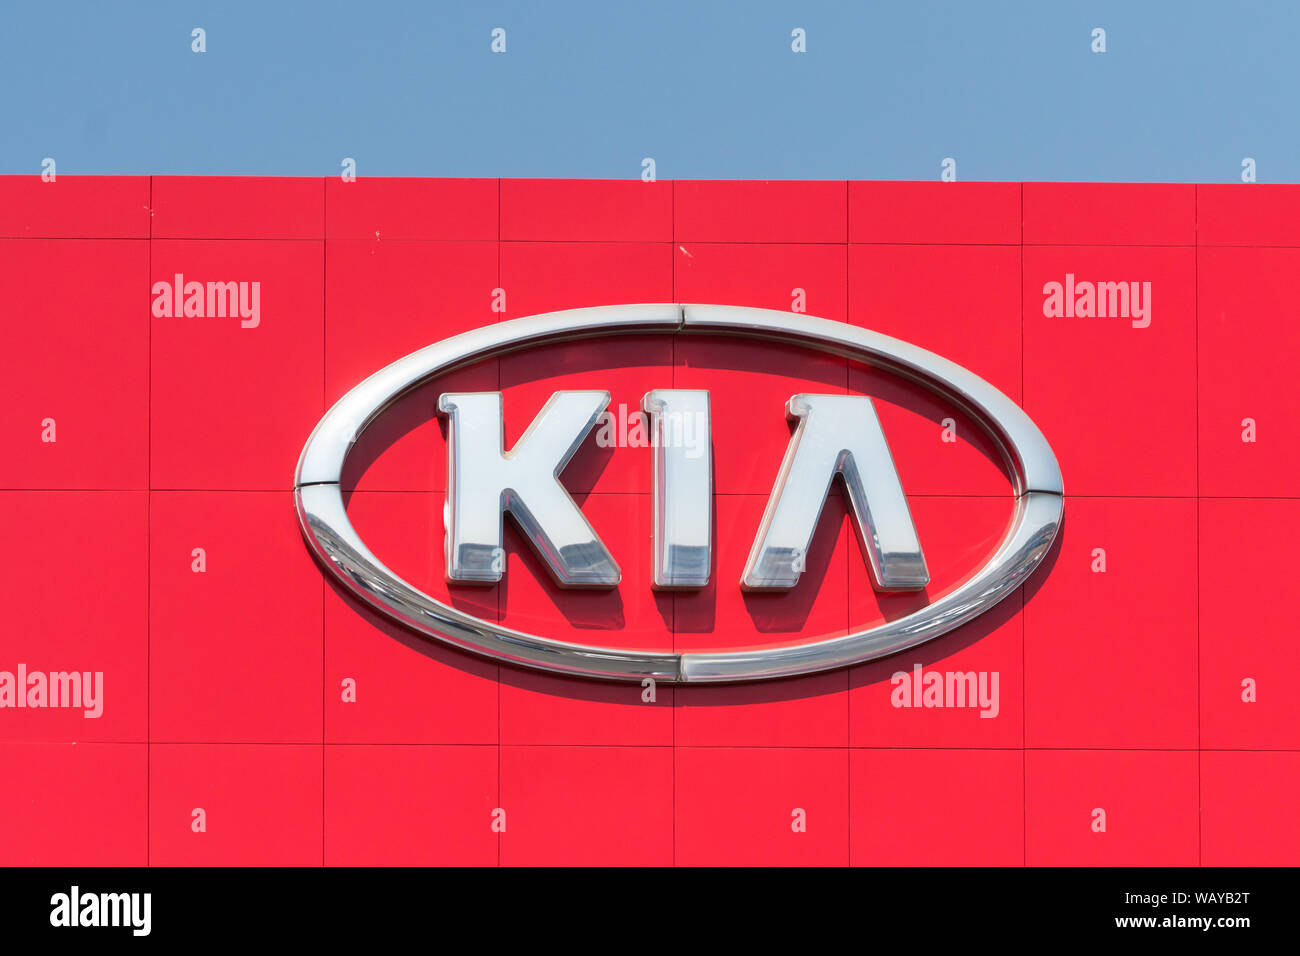 Kia brand immagini e fotografie stock ad alta risoluzione - Alamy